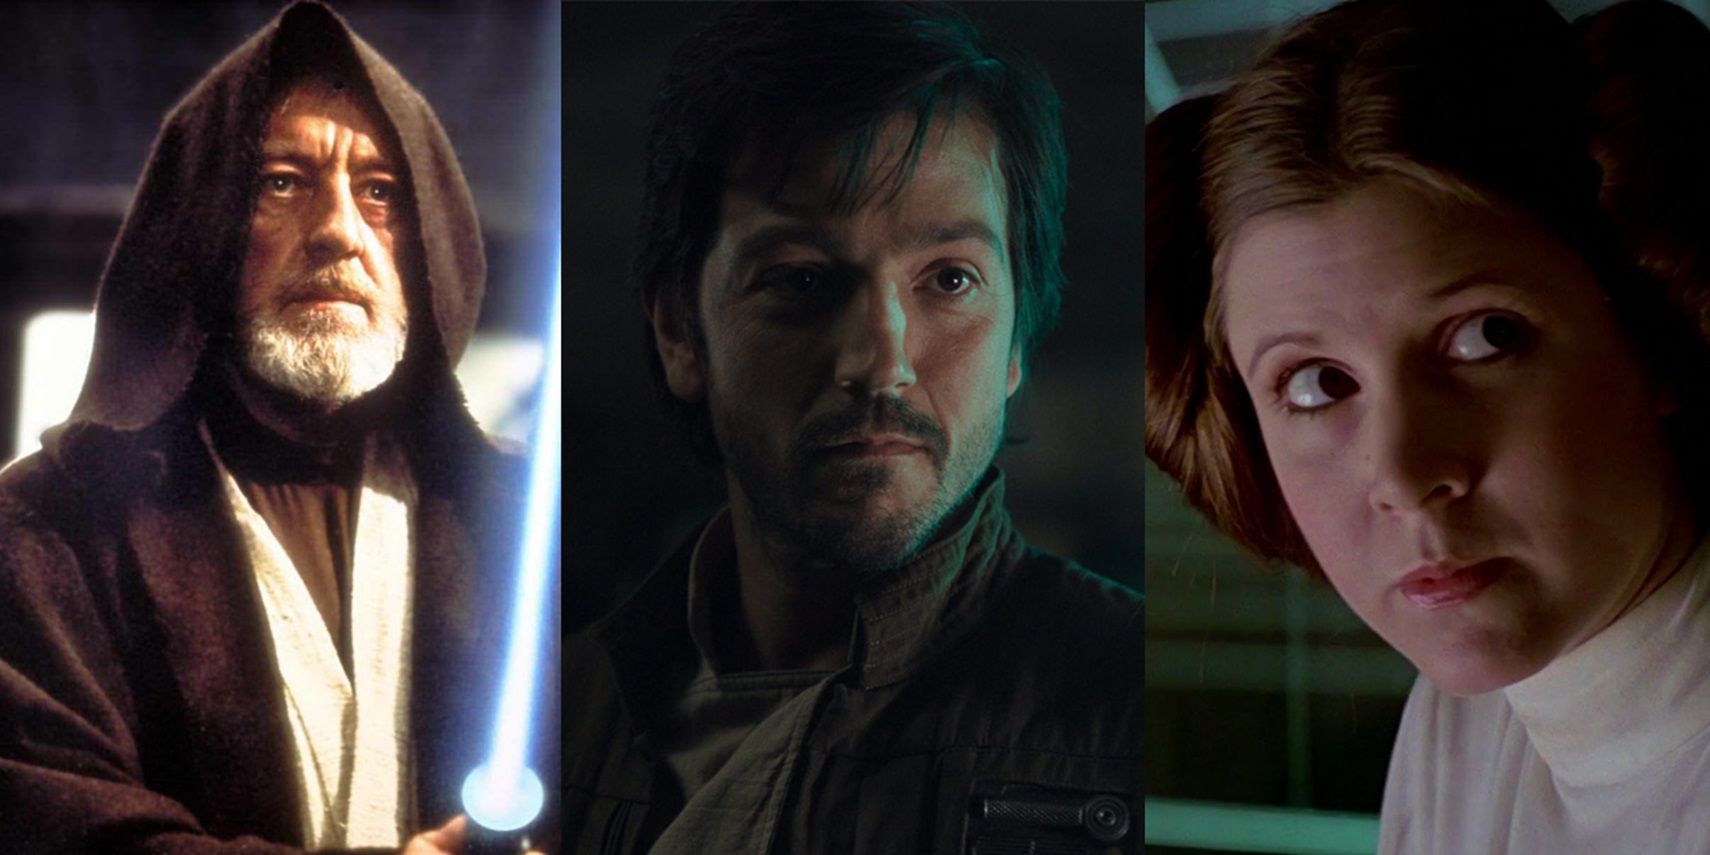 Ben Kenobi, Cassian Andor, and Princess Leia